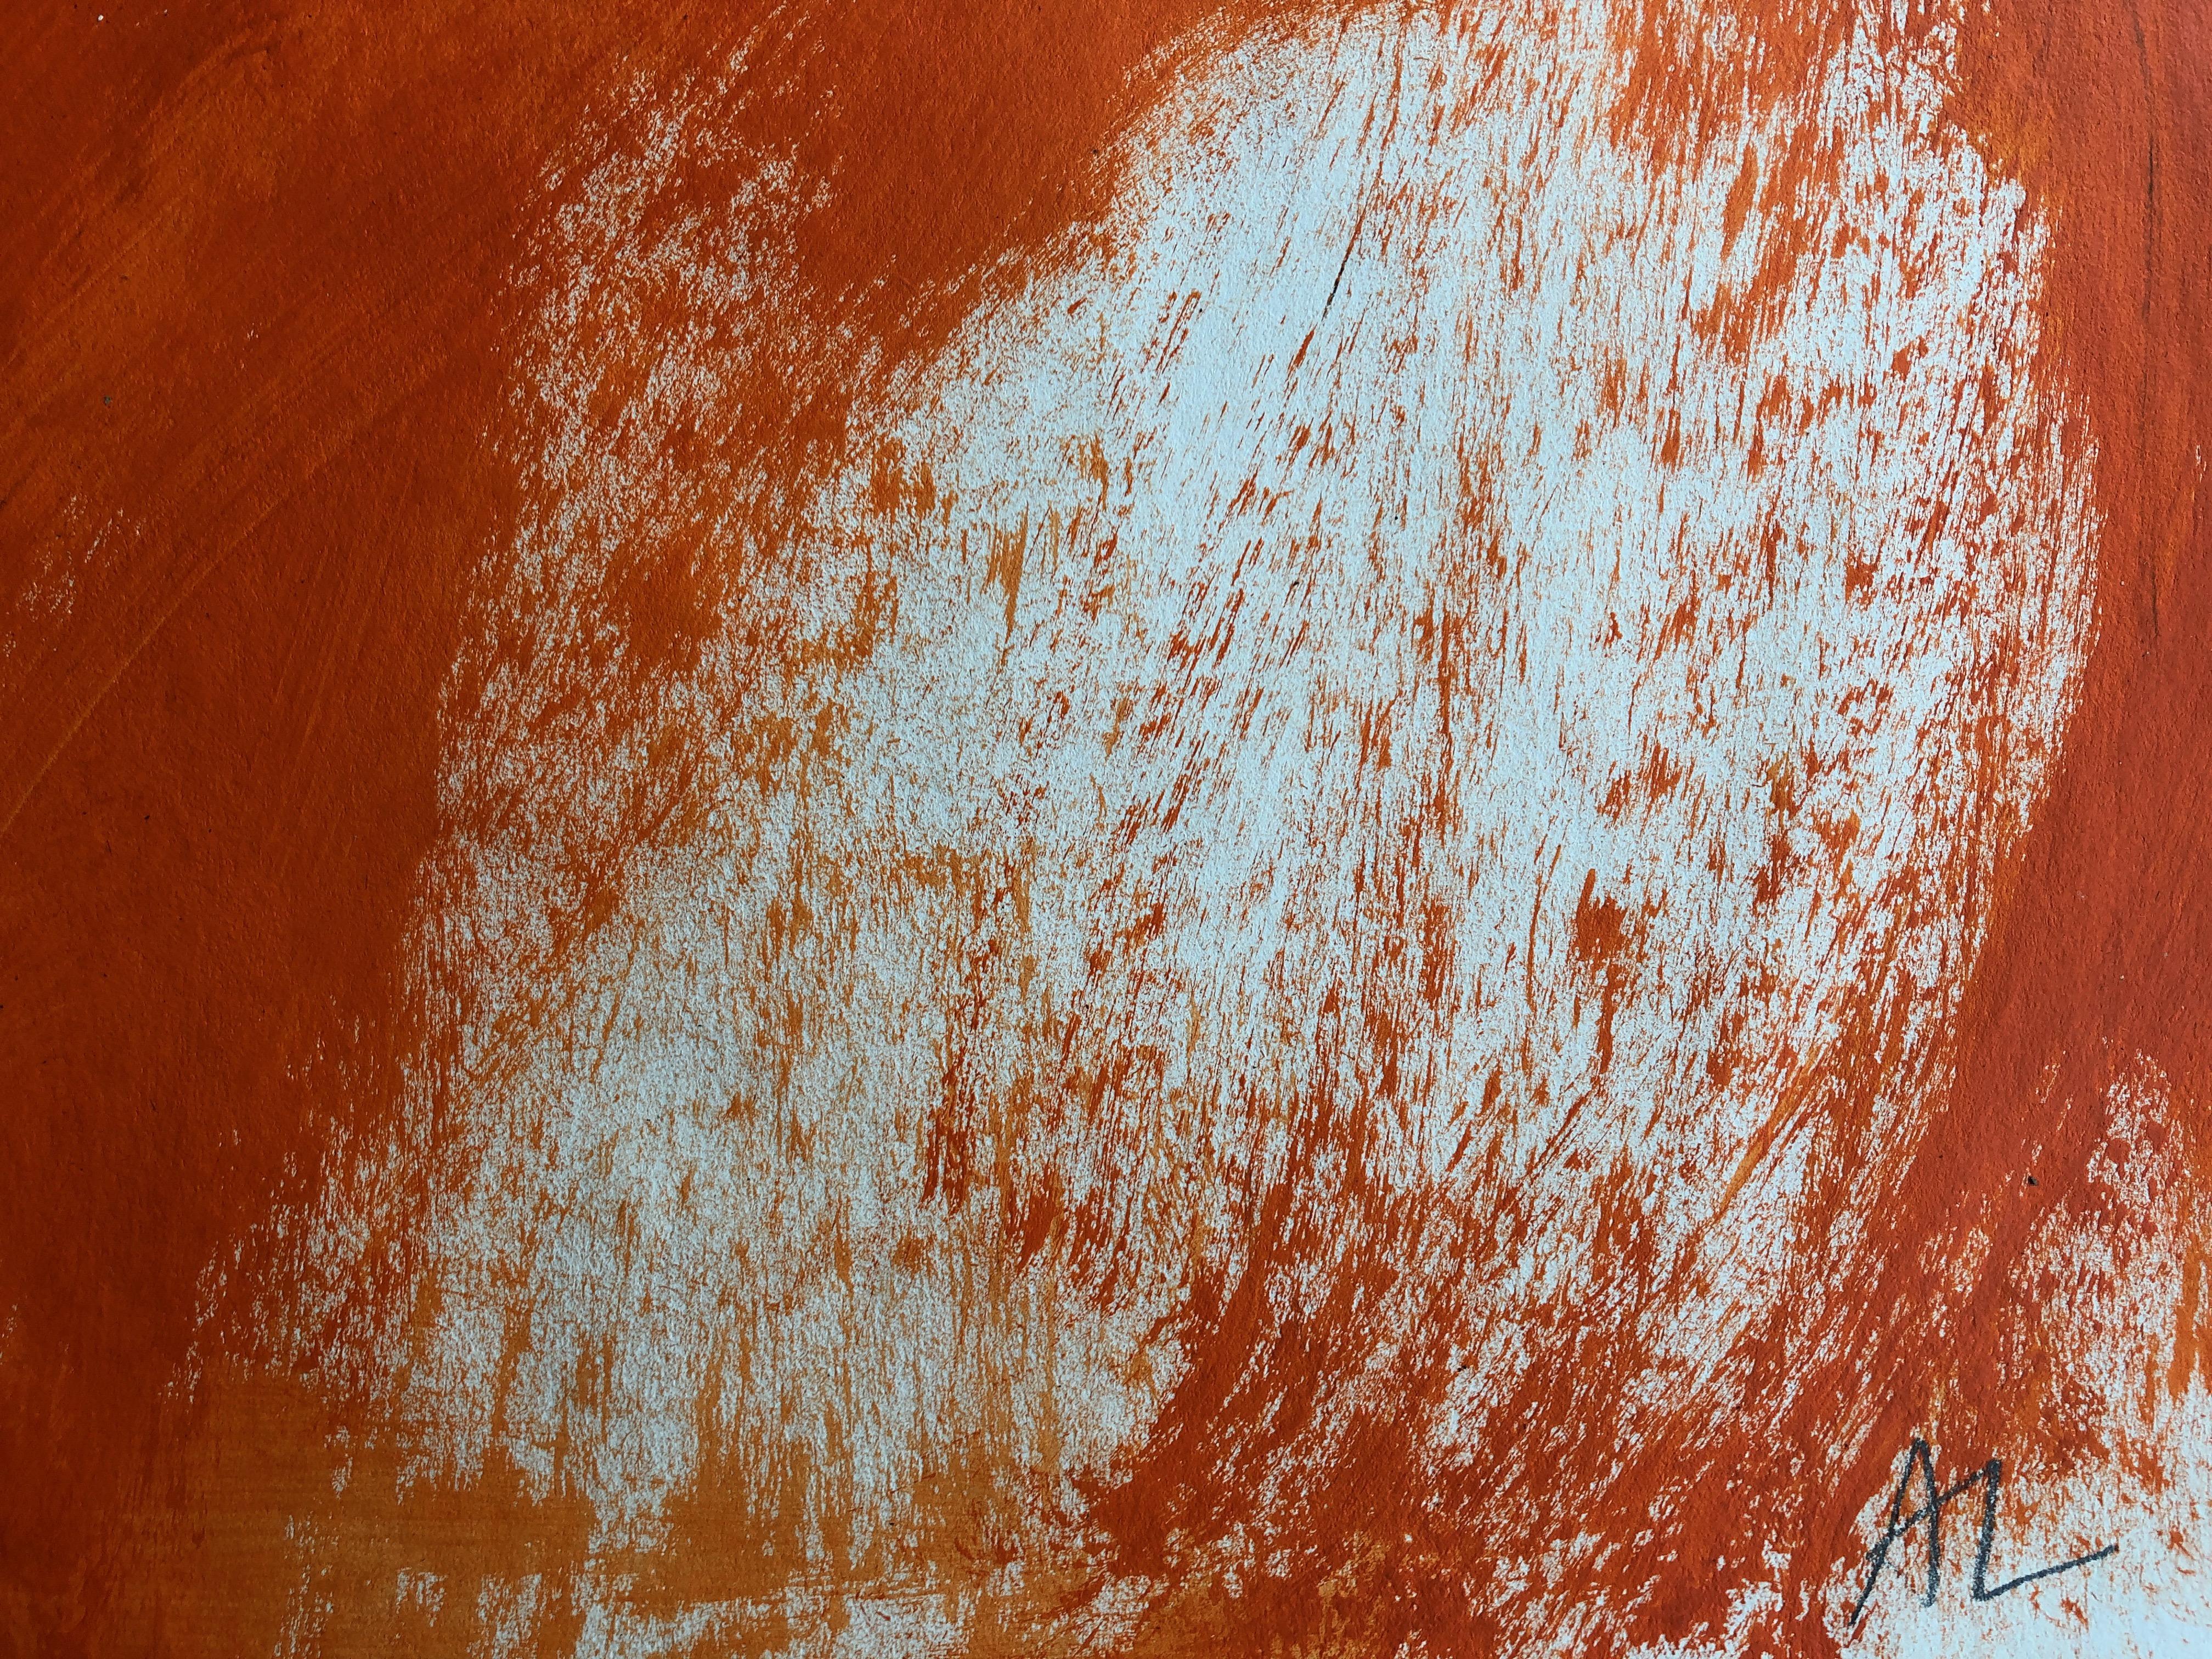 La femme orange. Techniques mixtes contemporaines sur papier - Contemporain Art par Angela Lyle